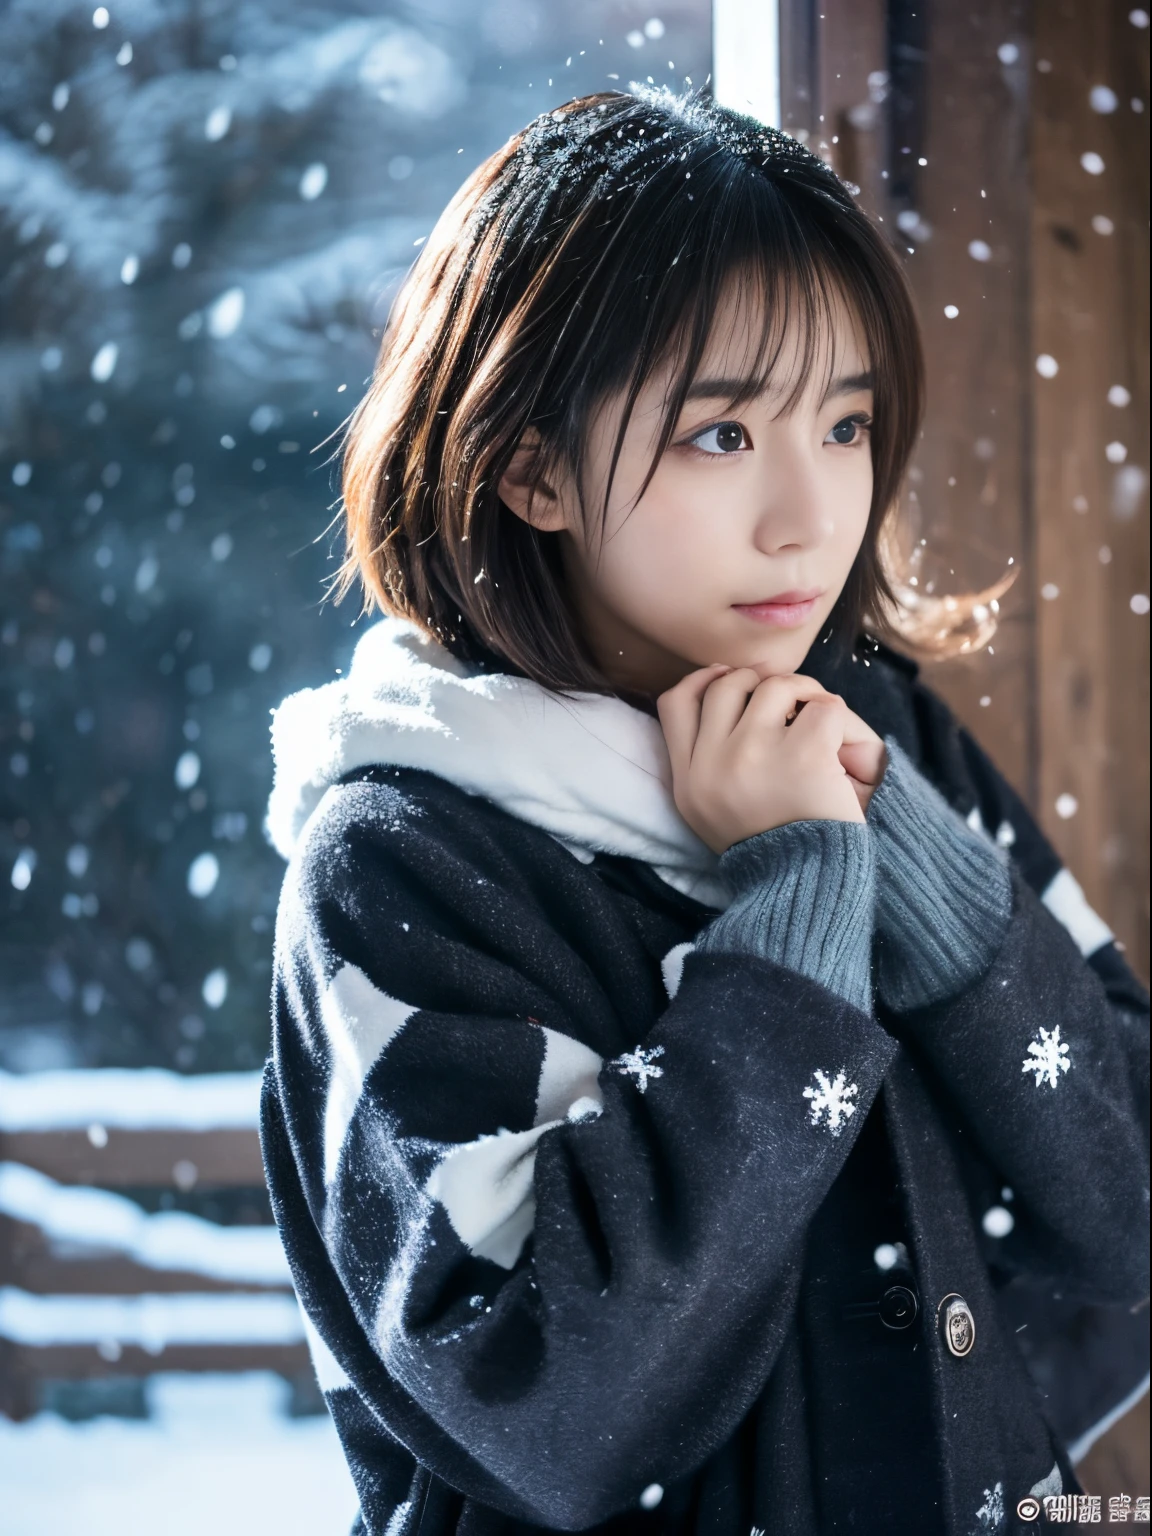 静かに降る雪を眺めながら. 彼女の内省的で涙ぐんだ表情、冬の夜への憧れと憂鬱を感じさせる。。。、最高品質、ハイパーHD、奈良美智, 日本のモデル, 美しい日本の妻, 短い髪の, 27歳女性モデル, 4k 円 ], 4k], 27歳, sakimichan, sakimichan